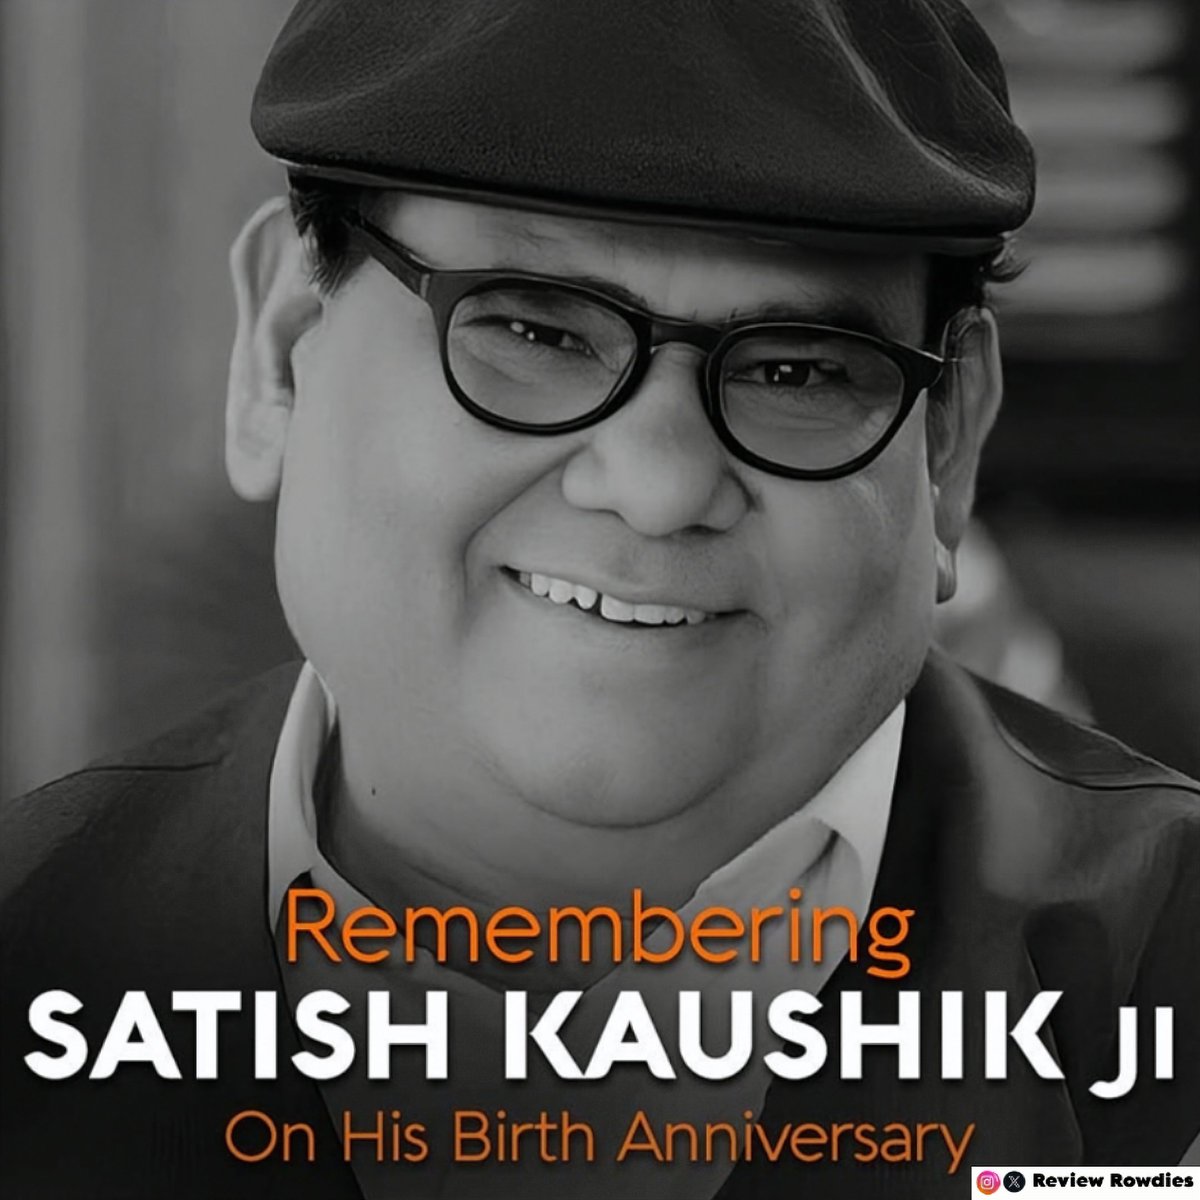 Remembering the legendary actor Satish Kaushik on his birth anniversary ❤️ 🙏 

#SatishKaushik  #SatishKaushikBirthAnniversary #Reviewrowdies